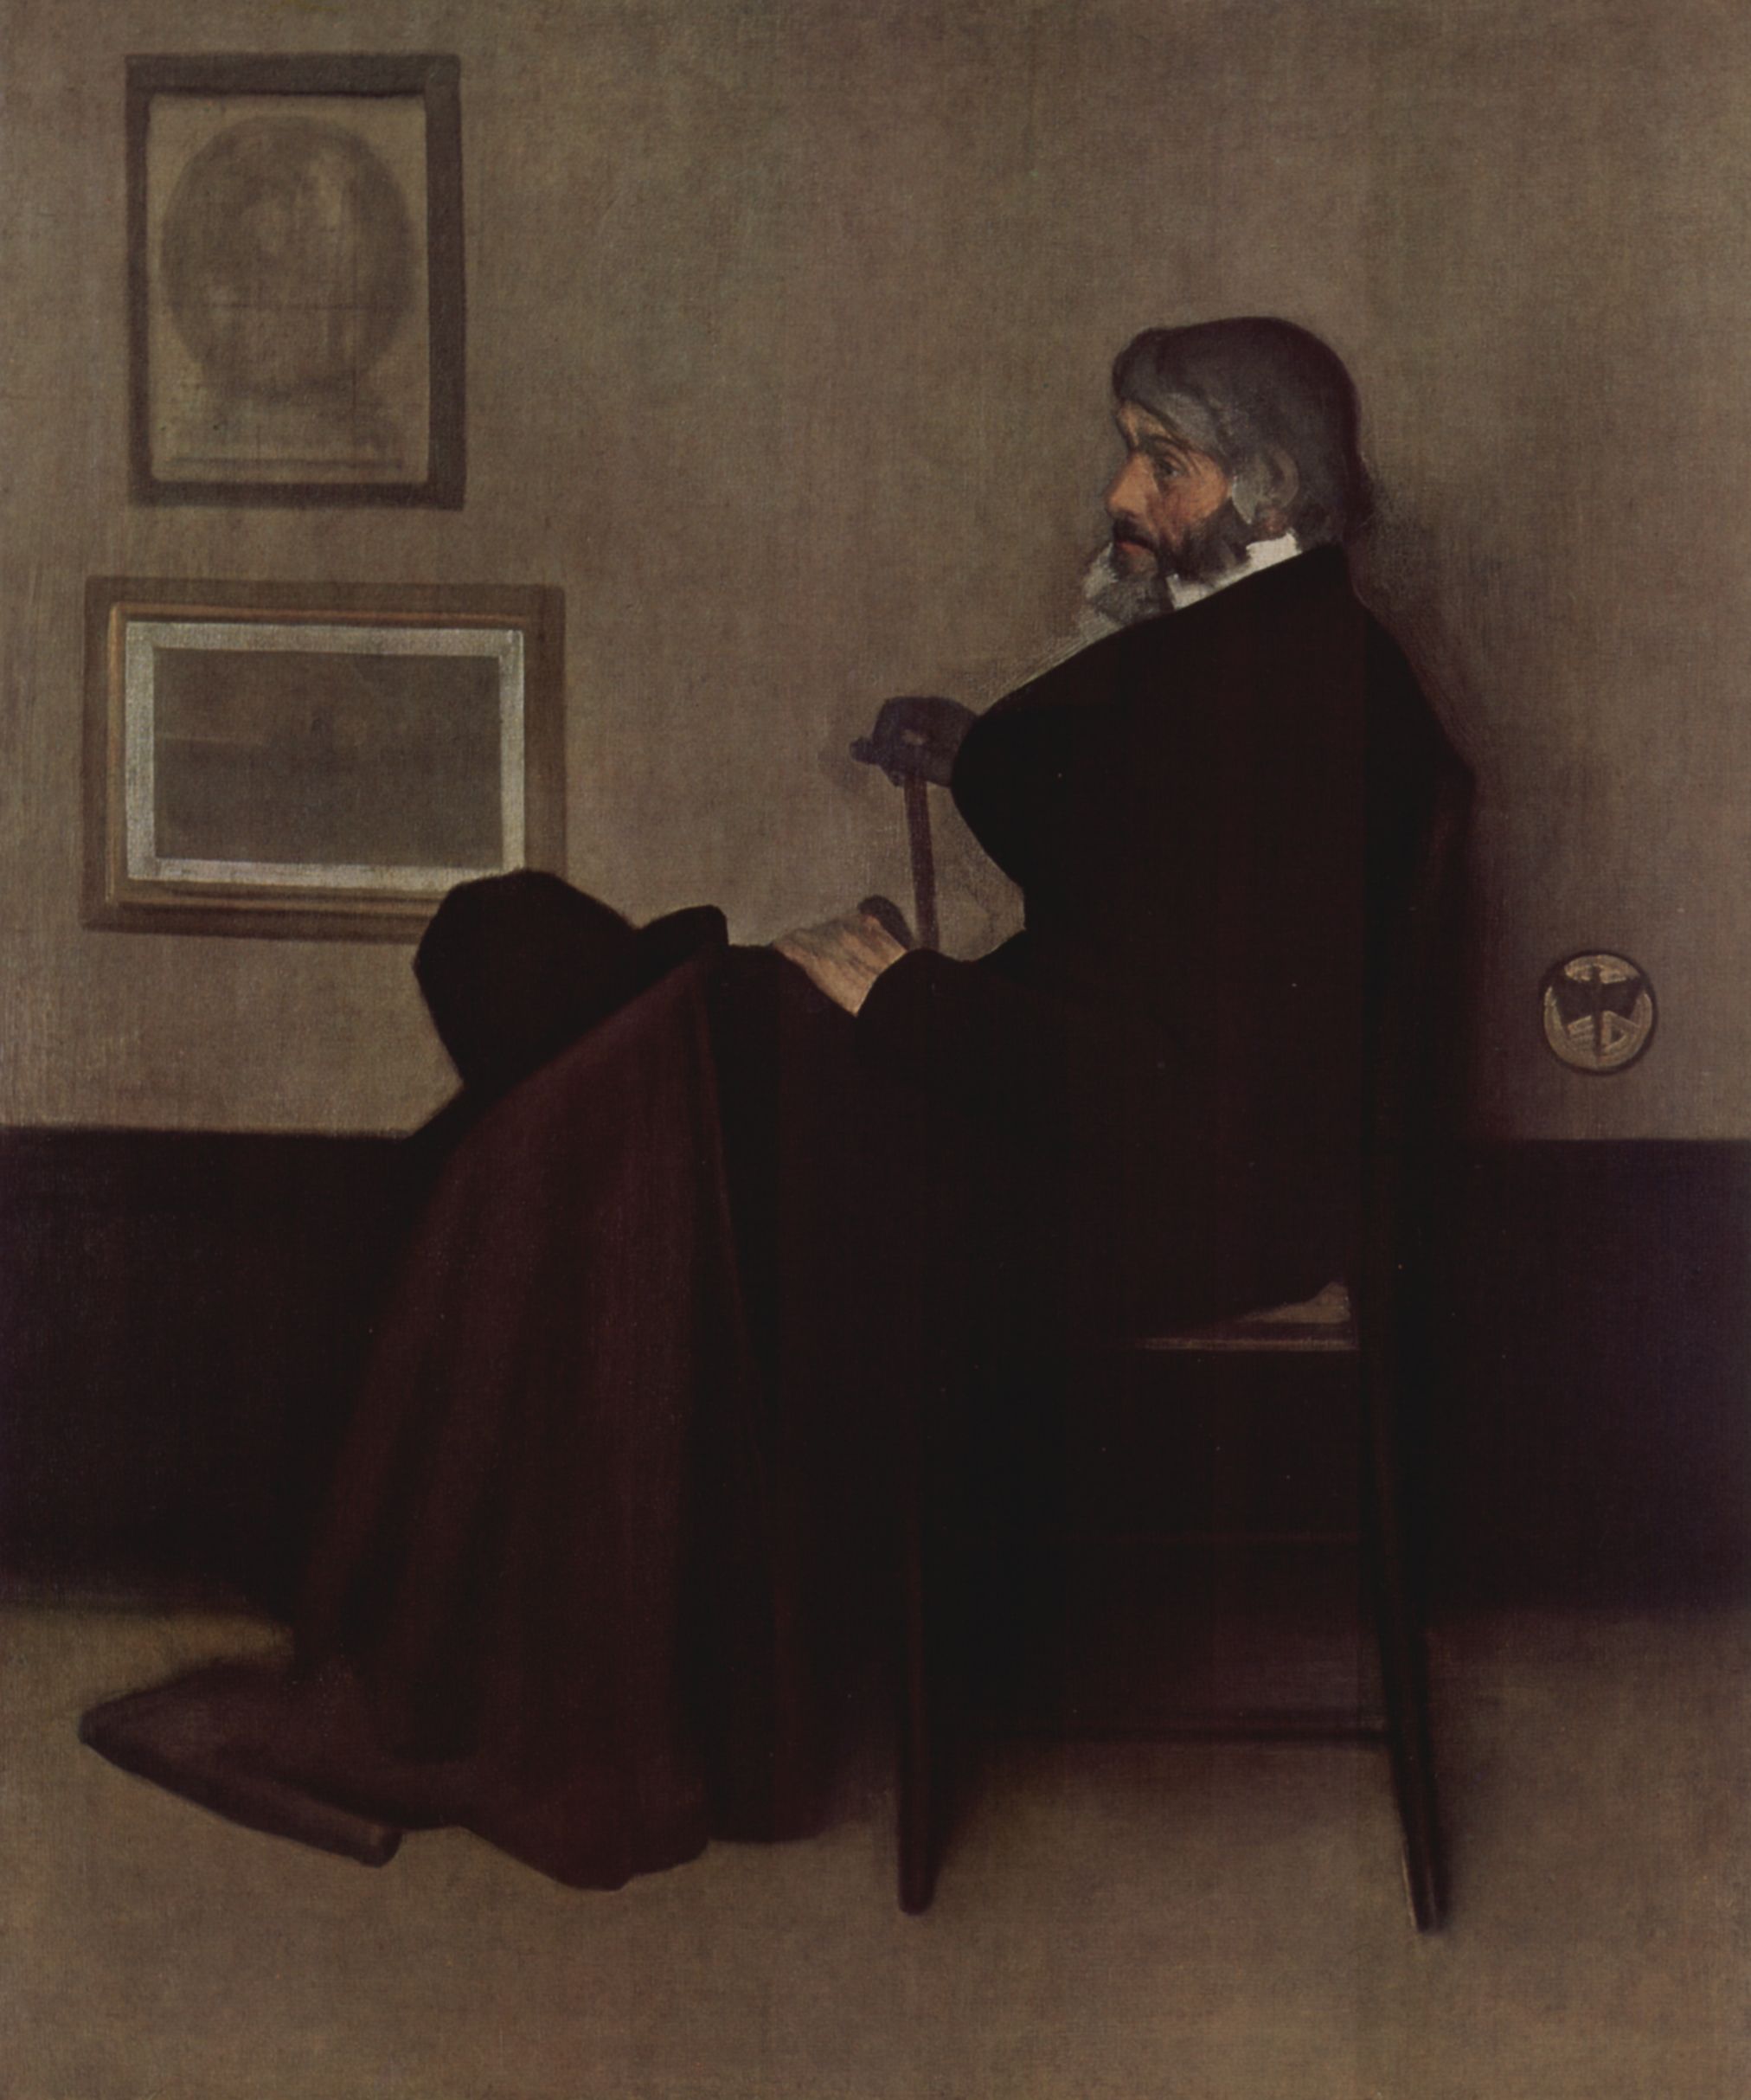 James Abbot McNeill Whistler: Arrangement in Grau und Schwarz, Portrt des Thomas Carlyle